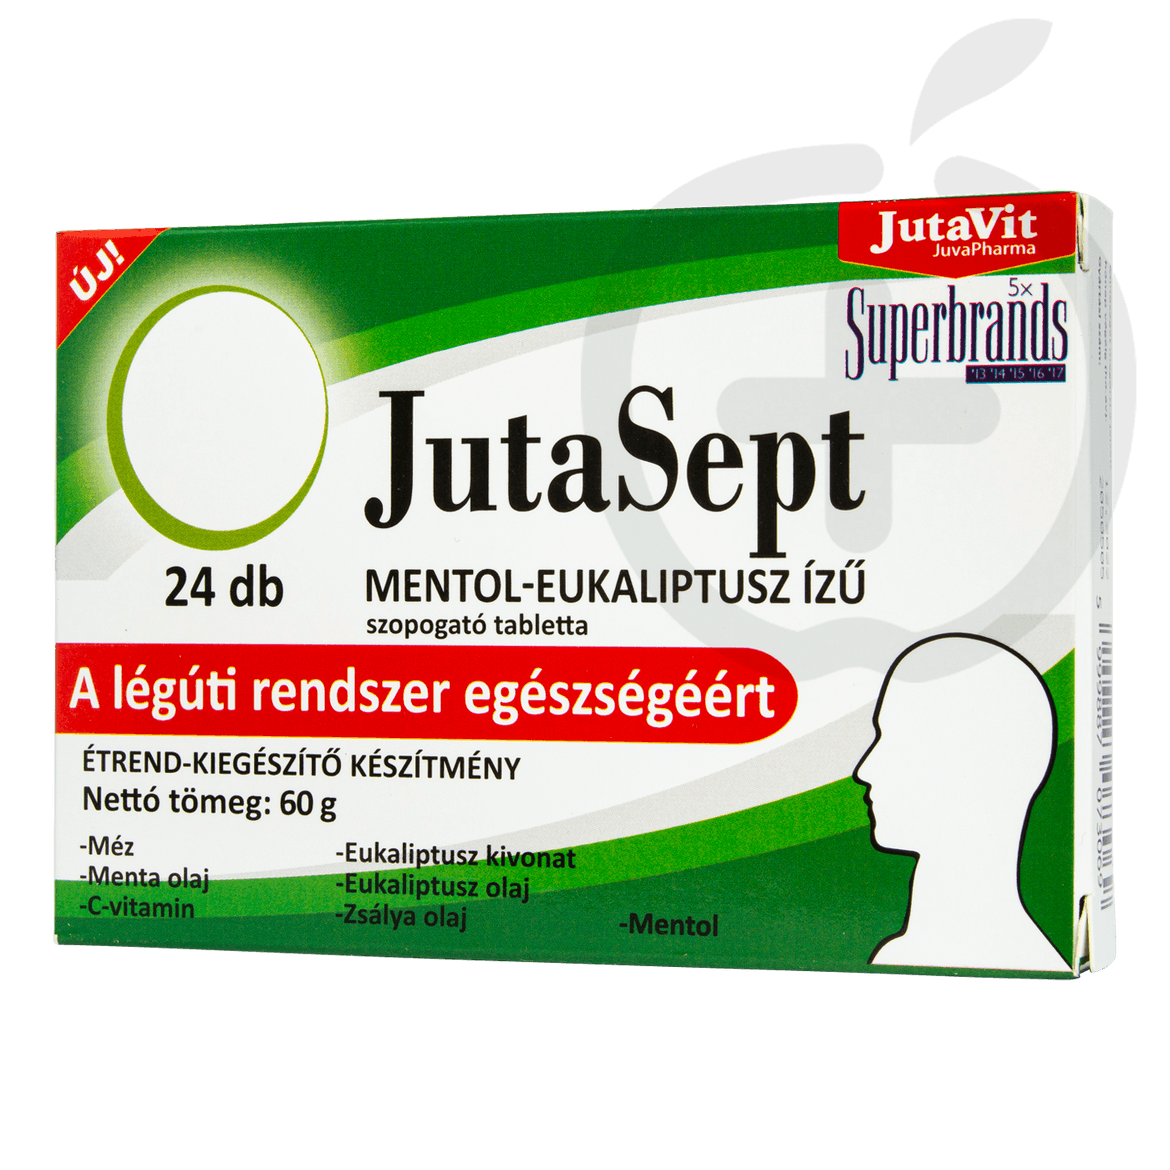 JutaVit Jutasept szopogató tabletta mentol-eukaliptusz ízű